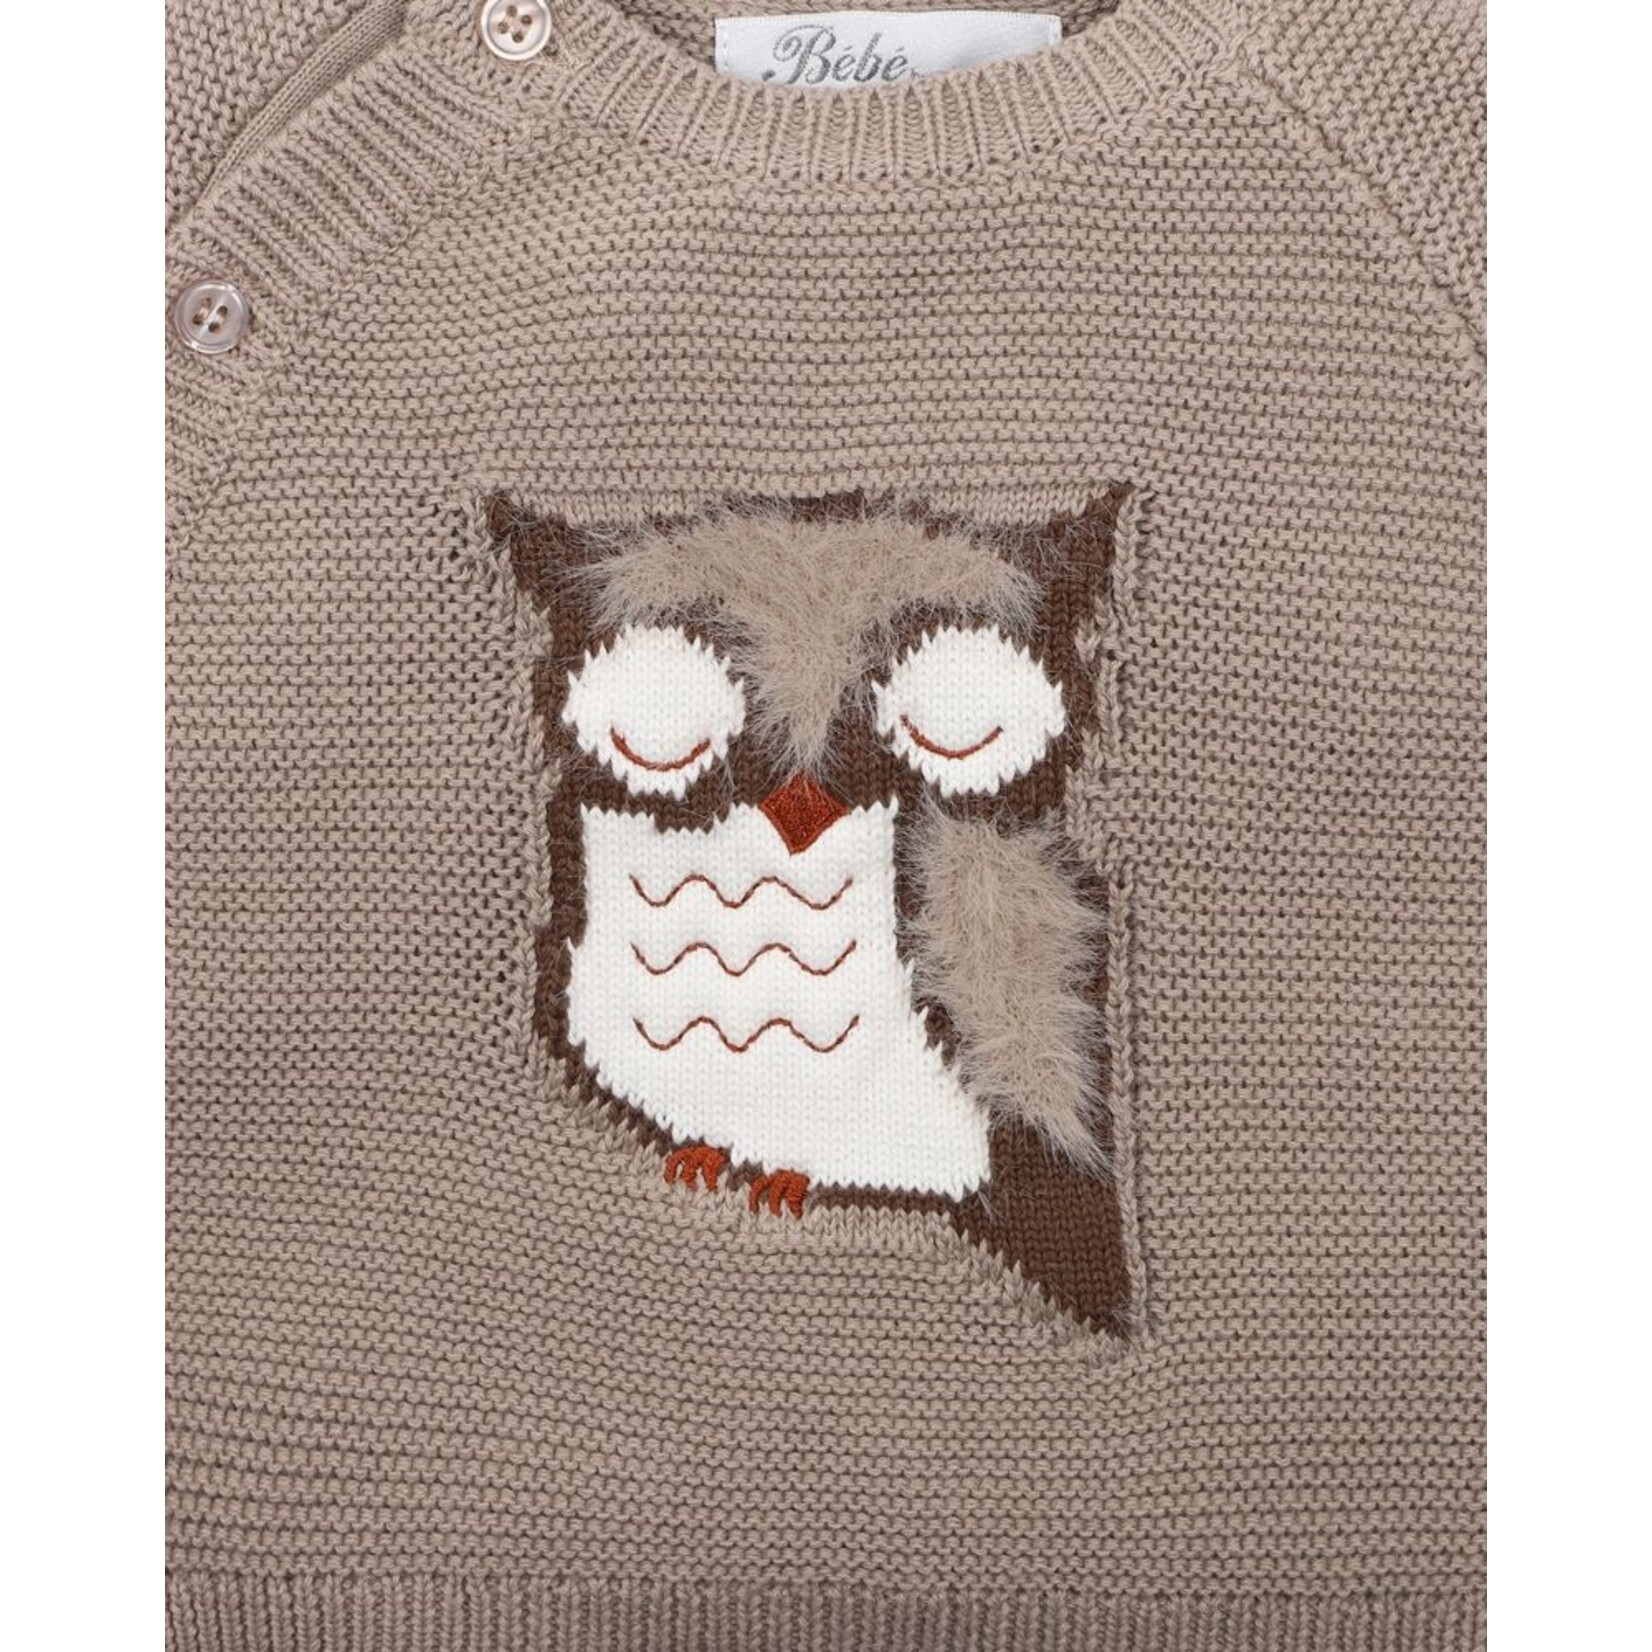 Bebe Eli Owl Knitted Jumper